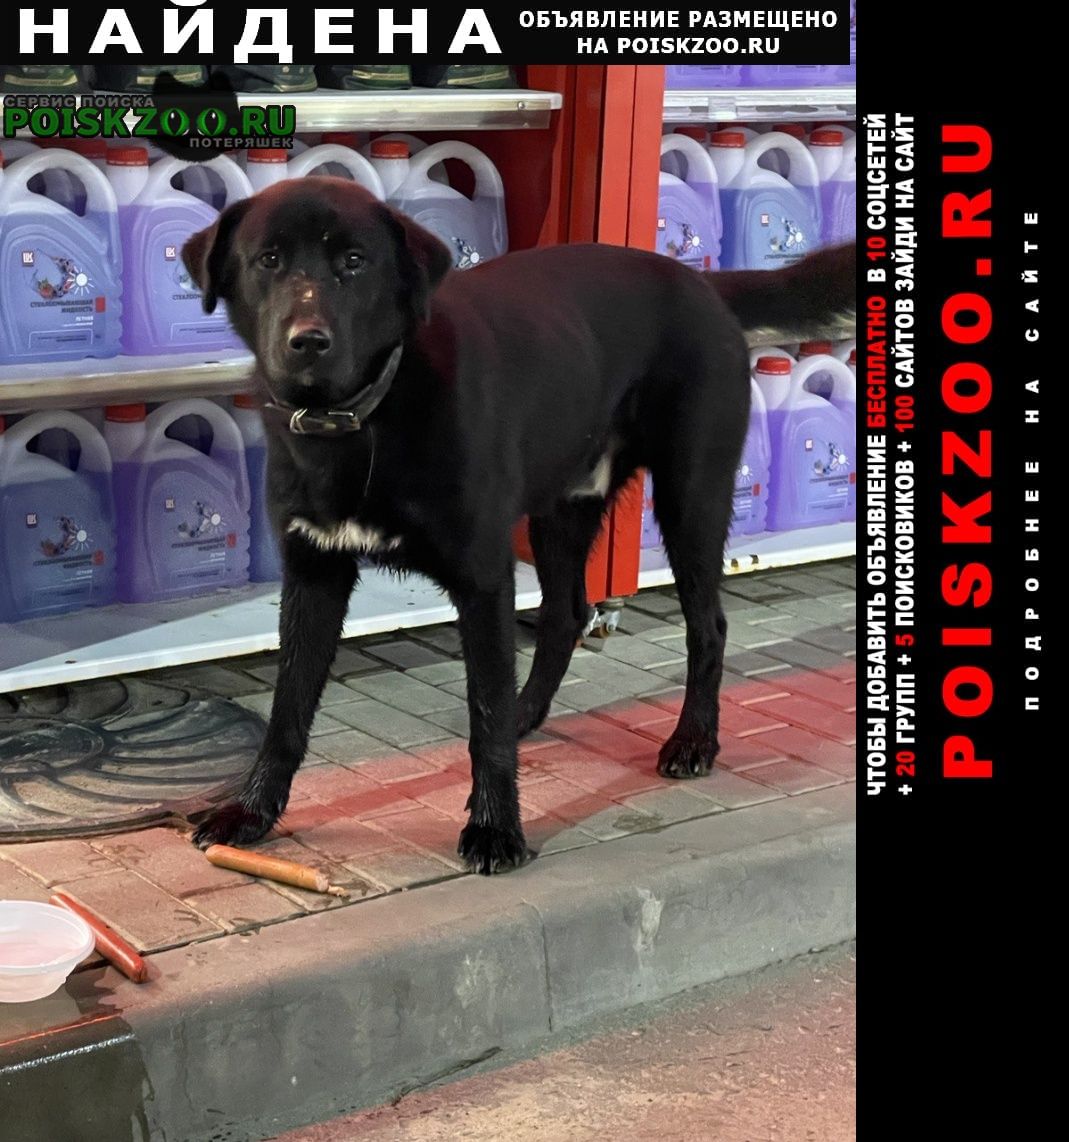 Найдена собака лукойл. московская область, наро-фоминск Нарофоминск